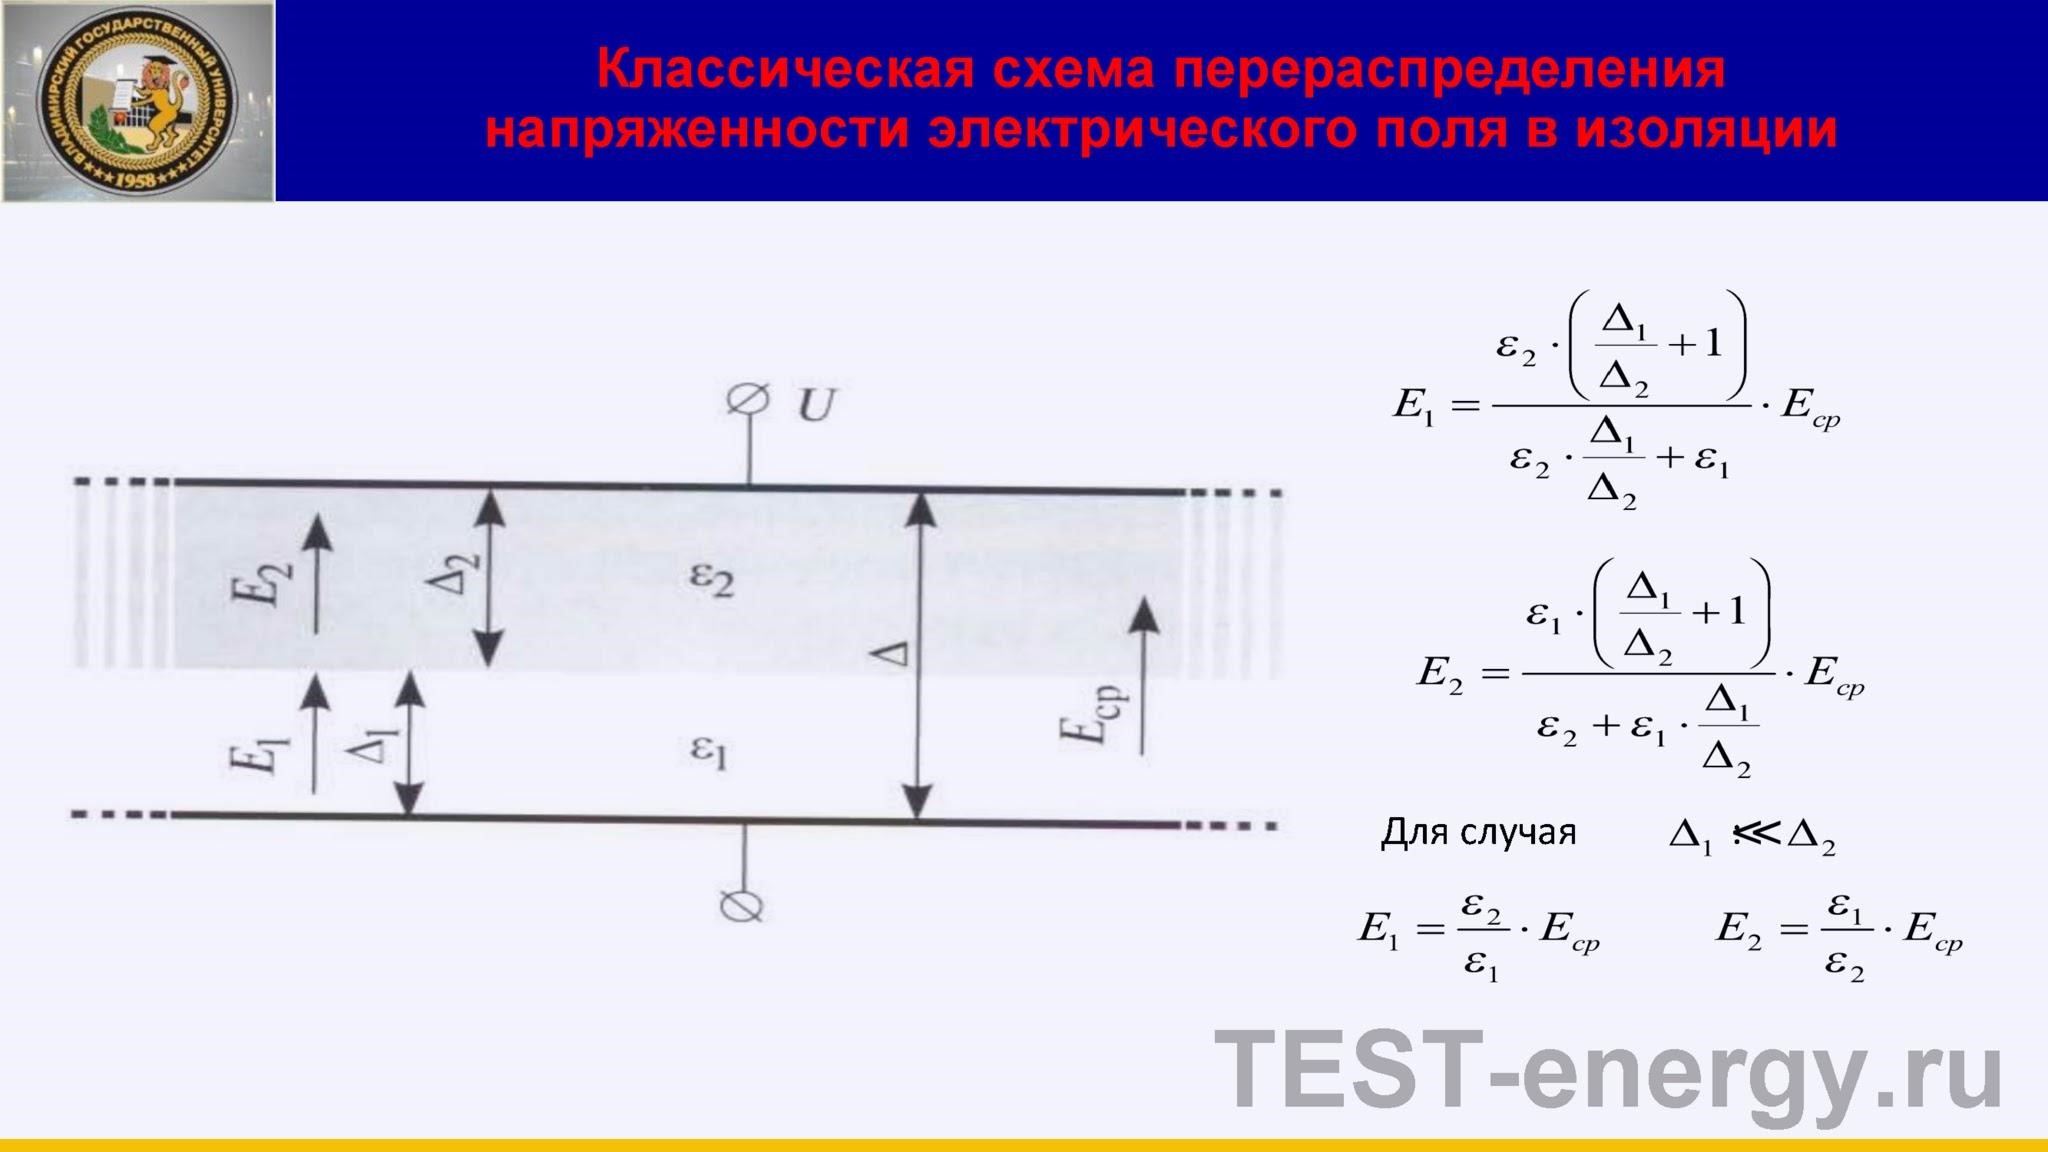 Классическая схема перераспределения напряженности электрического поля в изоляции